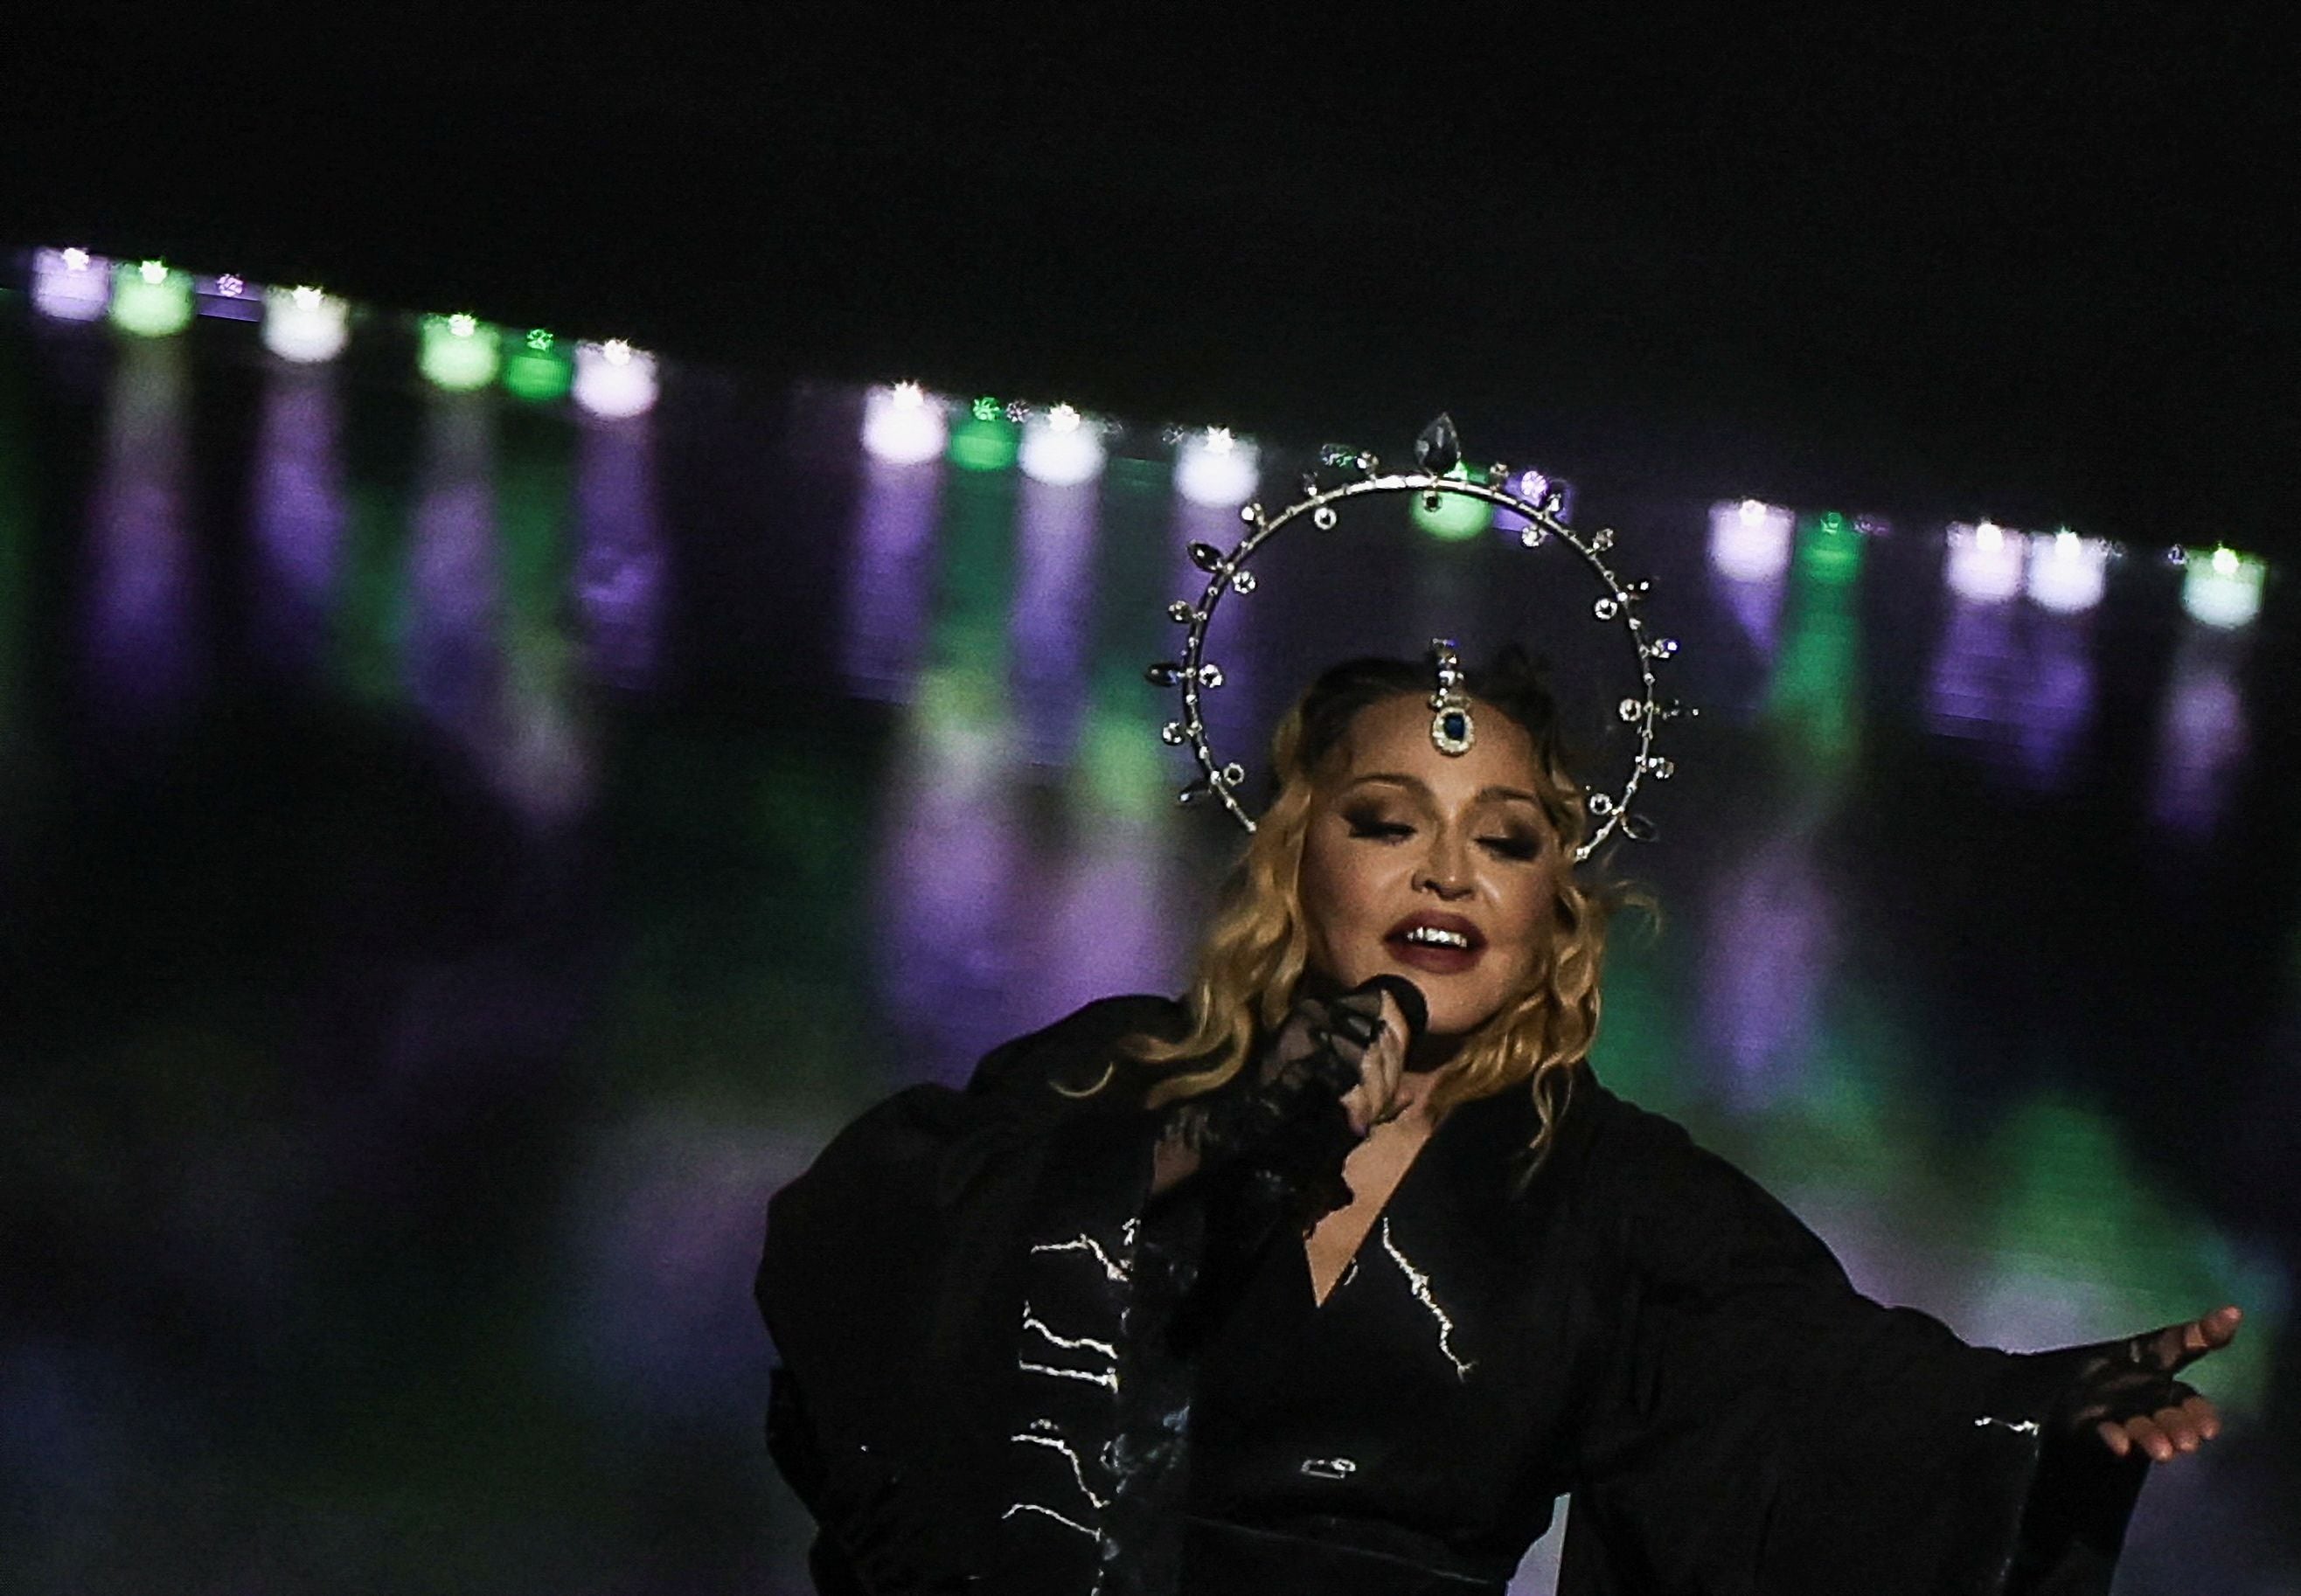 Entre las canciones que interpretó Madonna se encuentran  “Die Another Day”, “Don’t Tell Me”, “Express Yourself”, “La isla bonita” “Music” y más. (Créditos: REUTERS/Pilar Olivares)